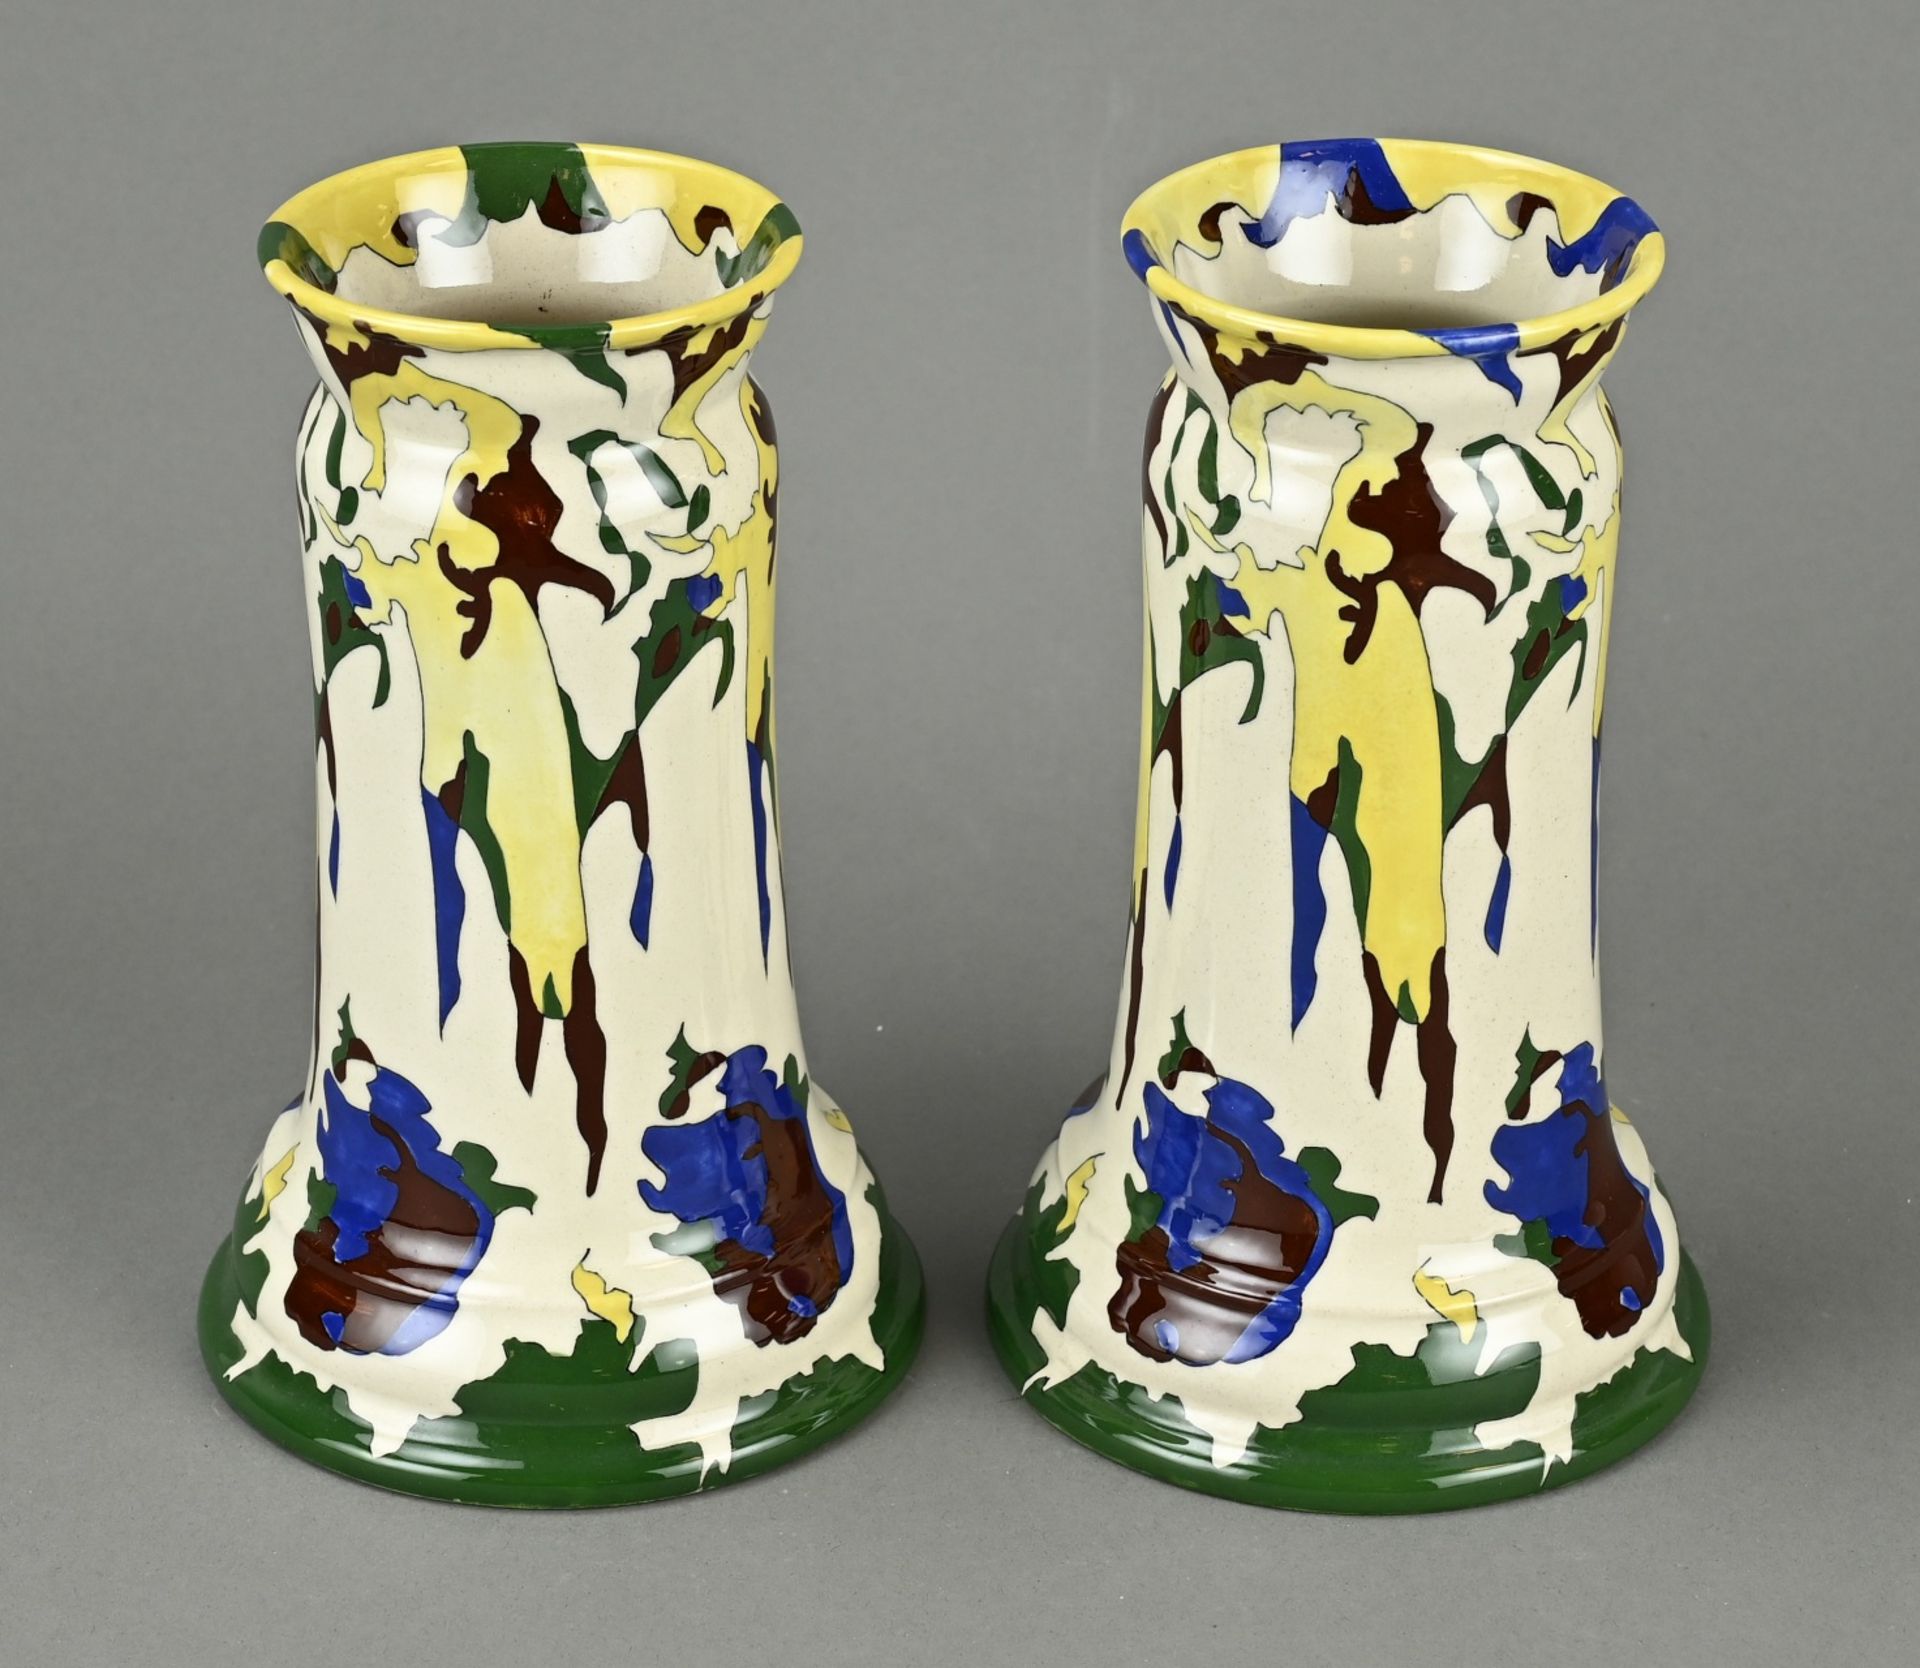 2x Antique Colenbrander vase, H 20.7 cm. - Image 2 of 3